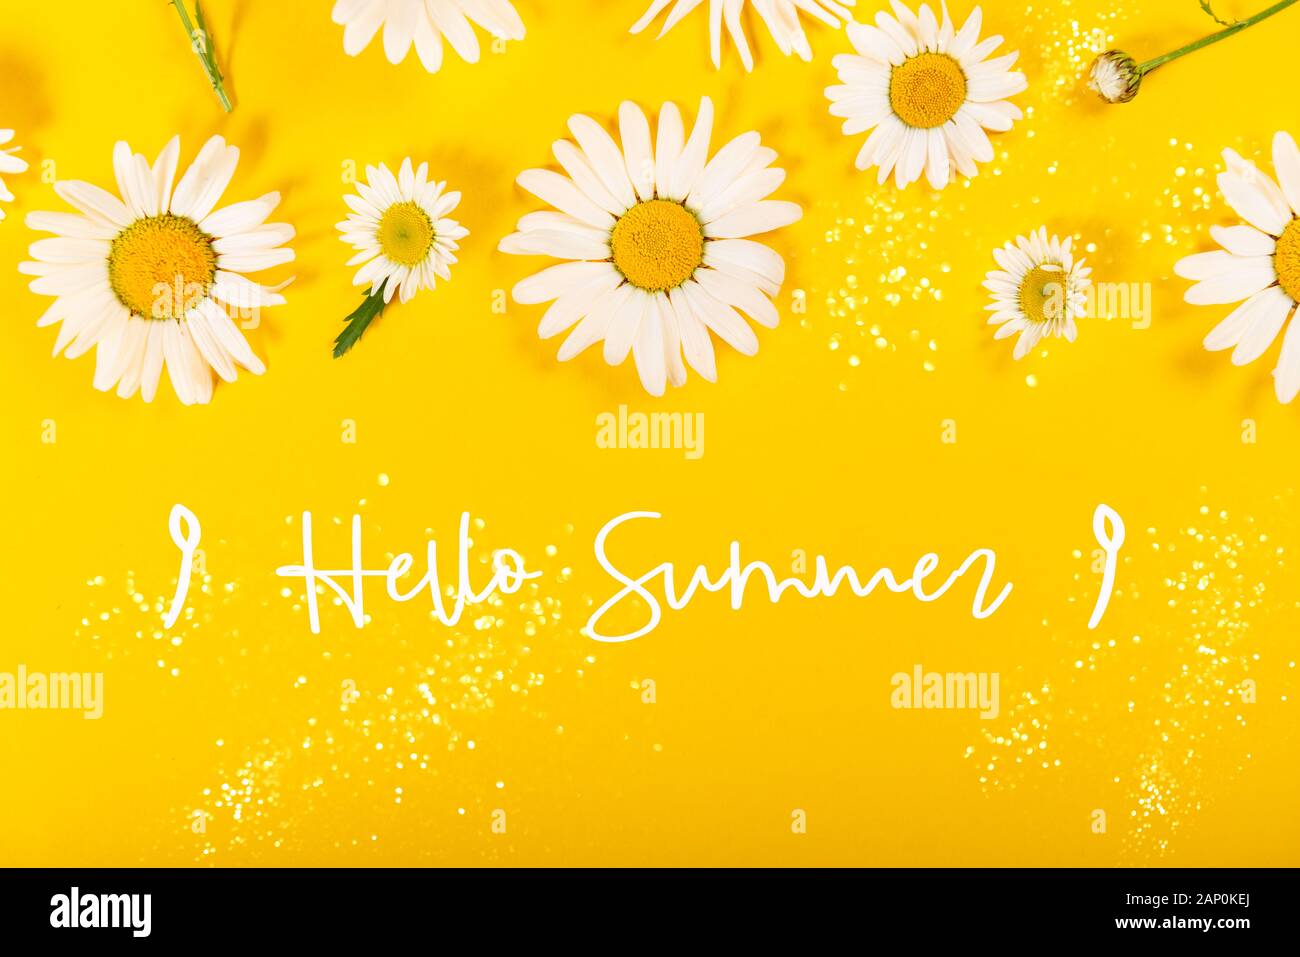 Hãy chào đón mùa hè với một mẫu họa tiết tươi sáng và đầy màu sắc! Họa tiết hoa cúc dại đáng yêu sẽ mang đến cho bạn cảm giác vui tươi và năng động. Hãy xem ngay để cảm nhận sự tươi mới và sự ấm áp của mùa hè.